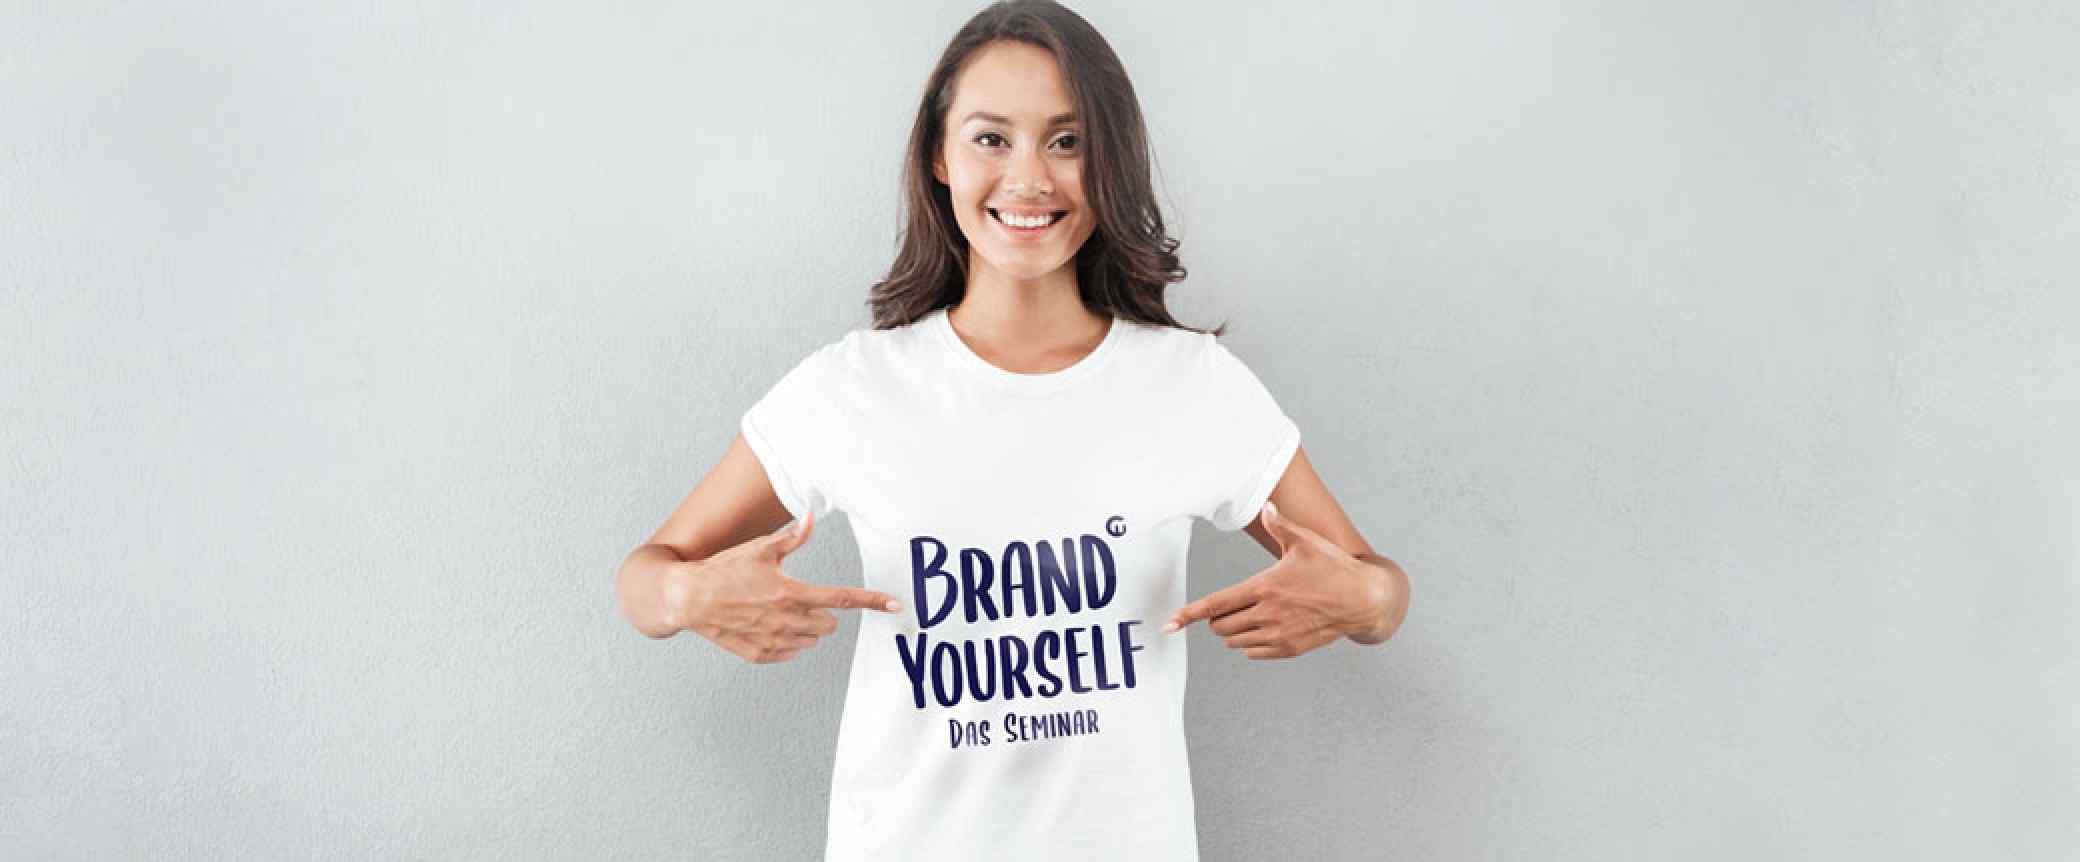 Brand Yourself: Machen Sie sich selbst zur Marke!